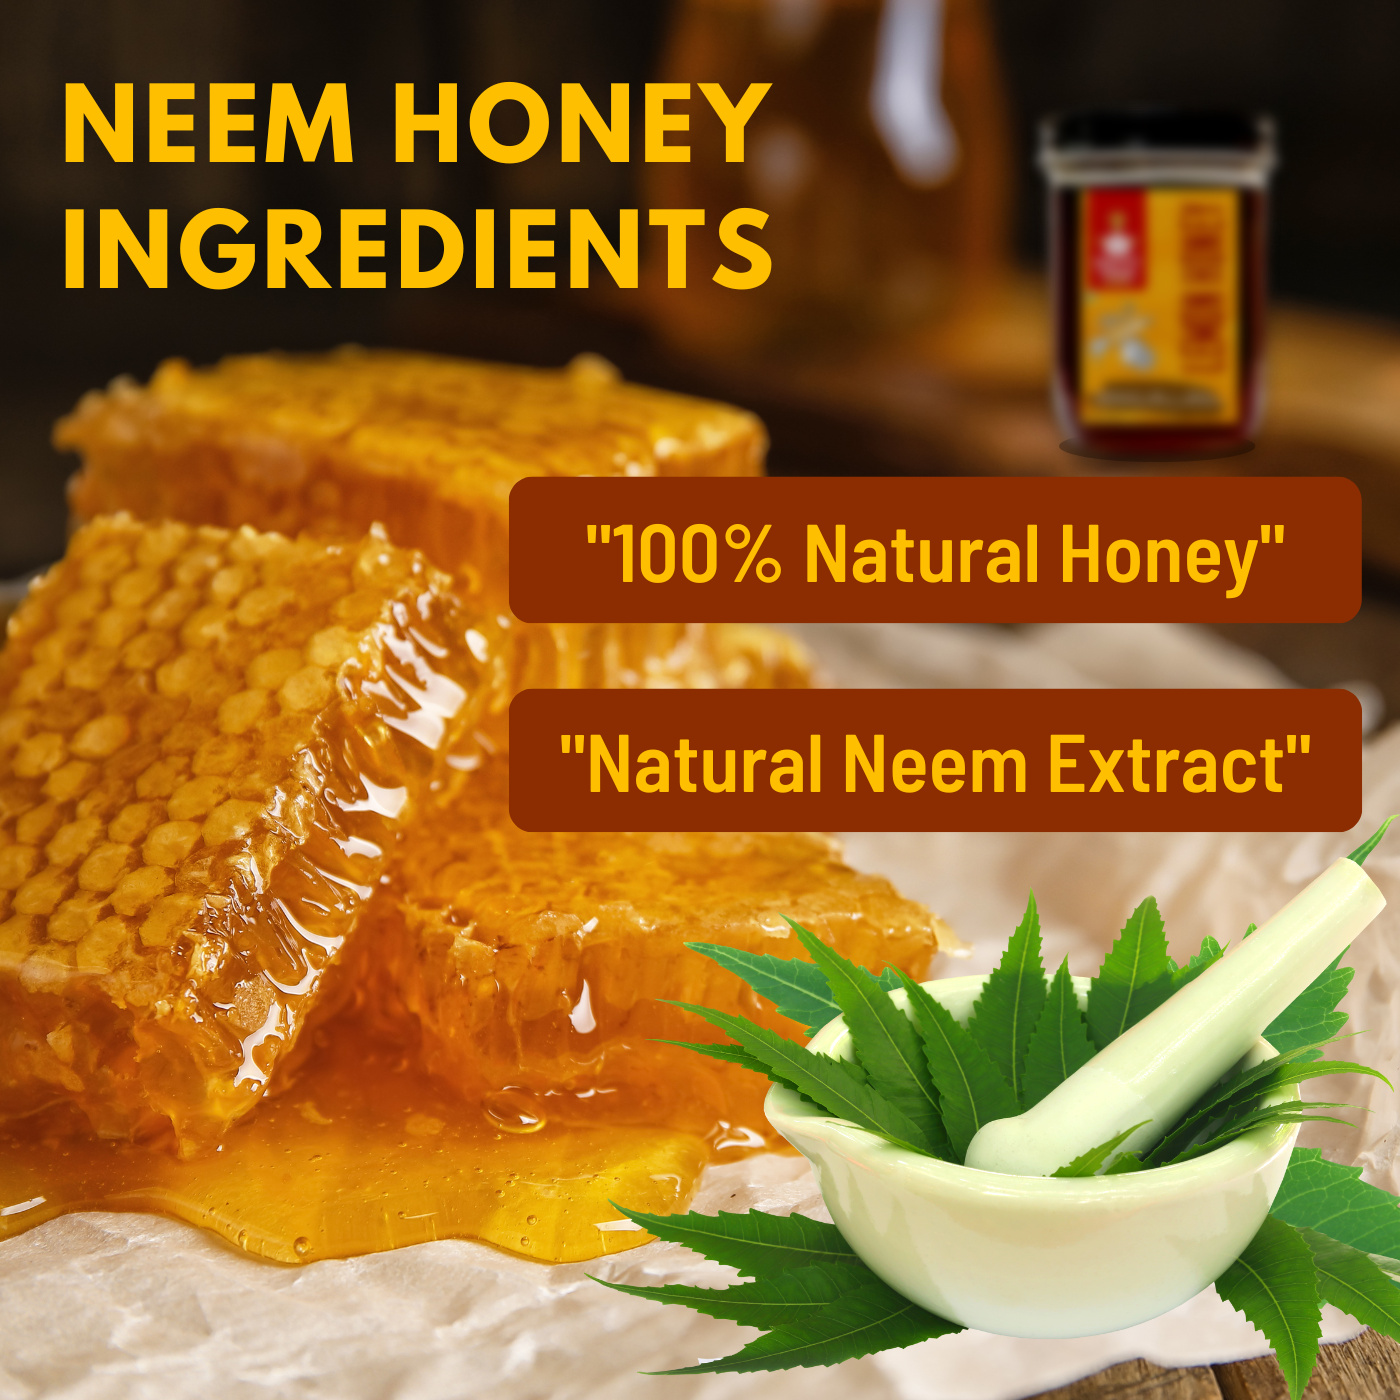 Nutty Yogi Neem Honey 500gm